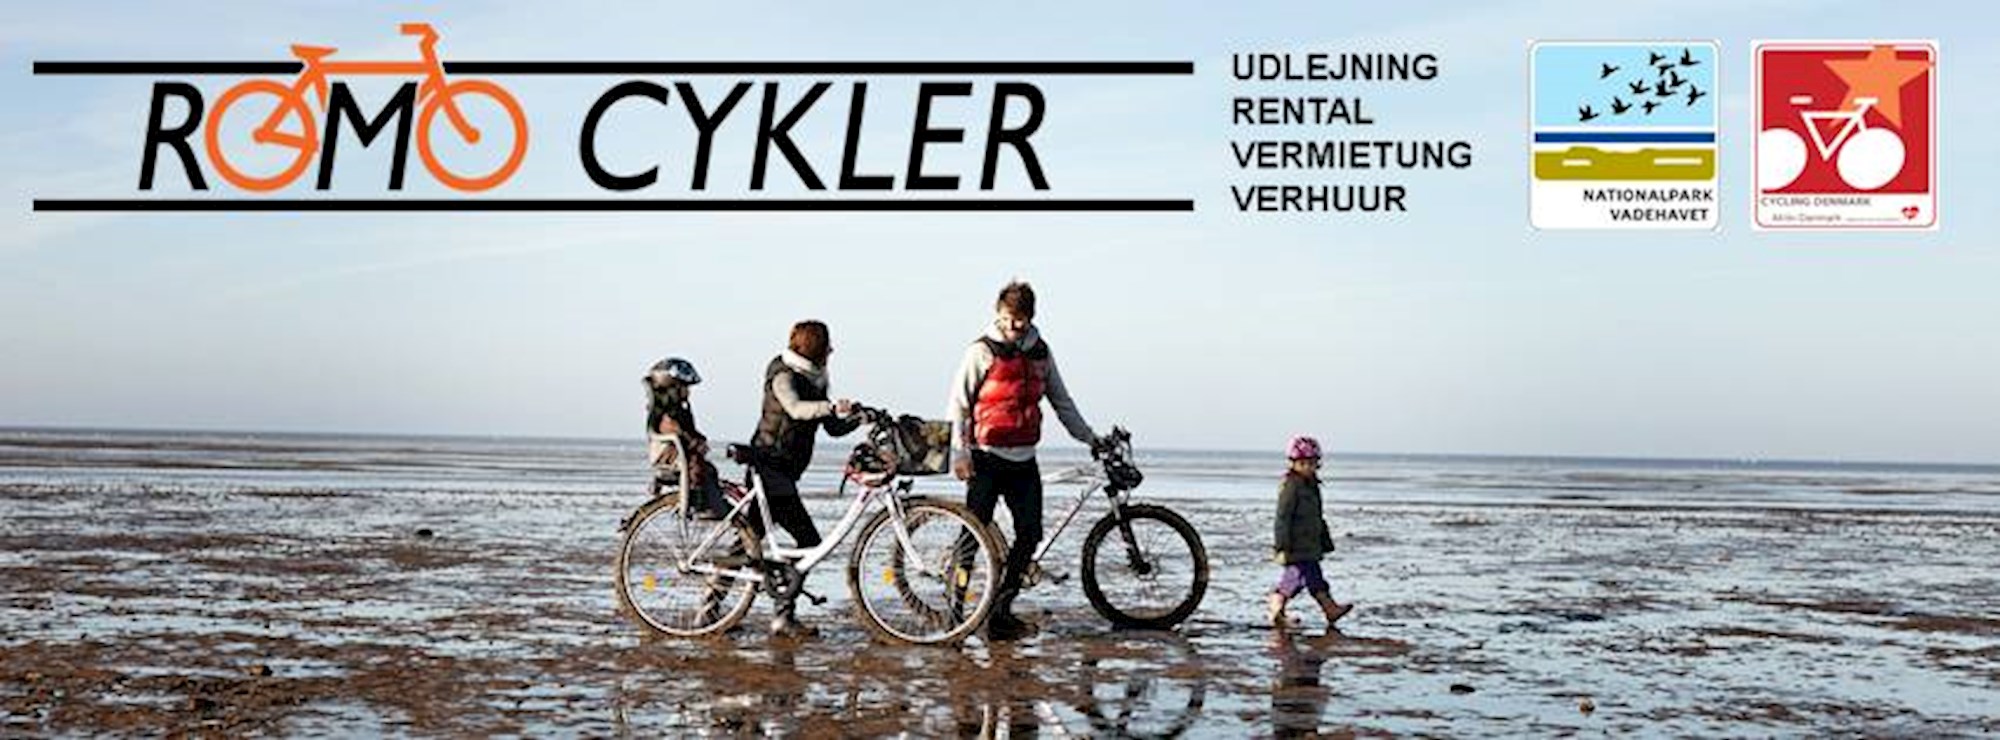 Rømø Cykler | dit besøg i Rømø Discover Denmark